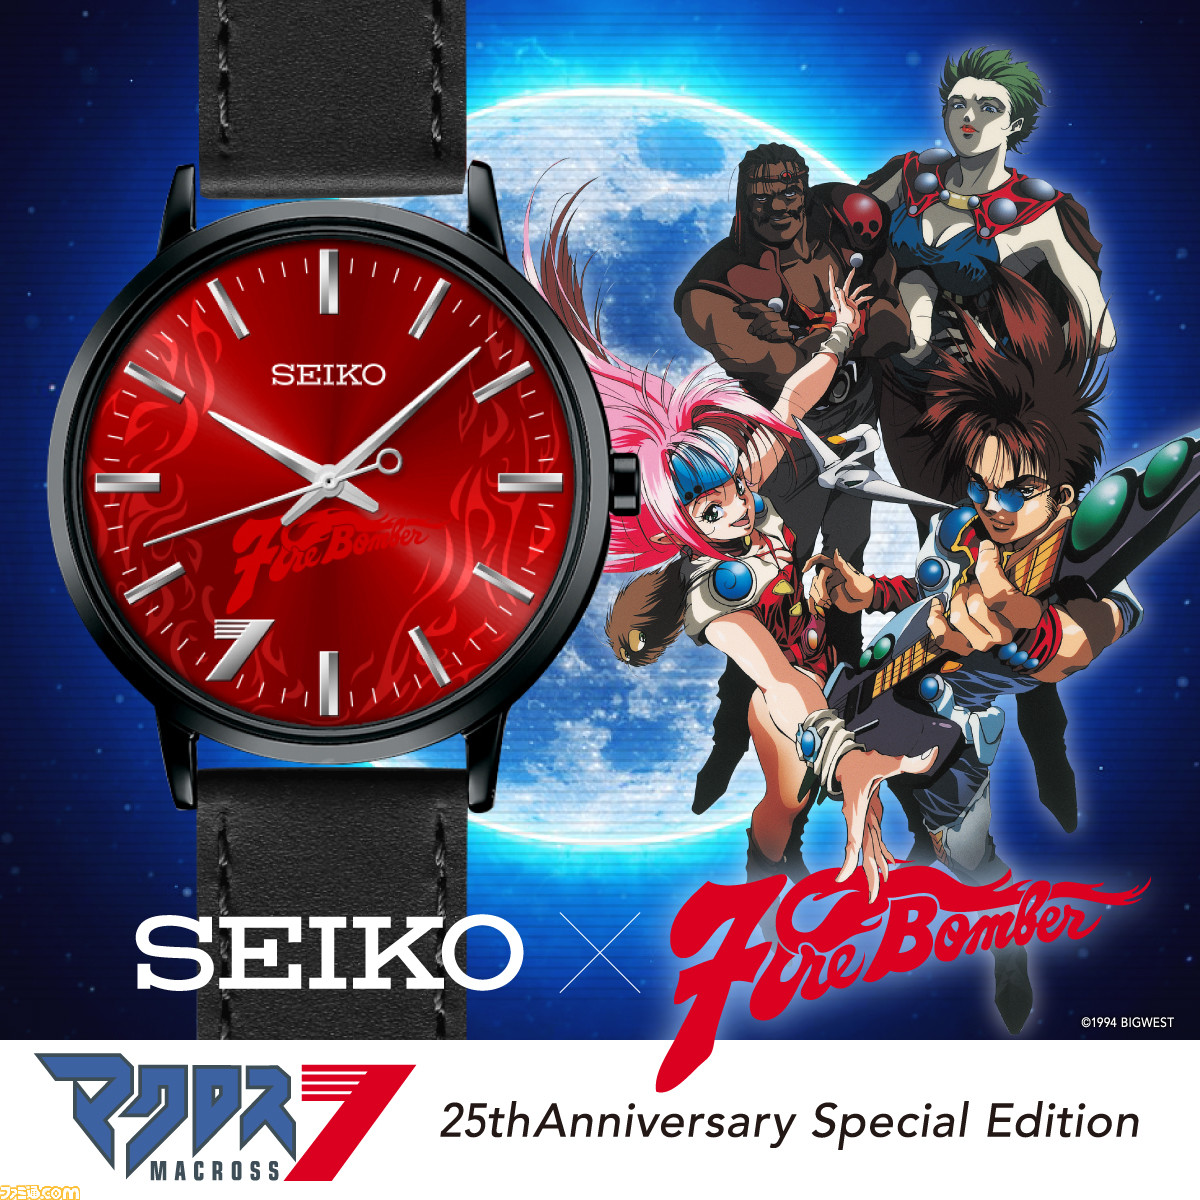 マクロス7 25周年記念のseikoのコラボ腕時計が登場 炎の赤い文字盤に Fire Bomber のクールなデザイン ファミ通 Com